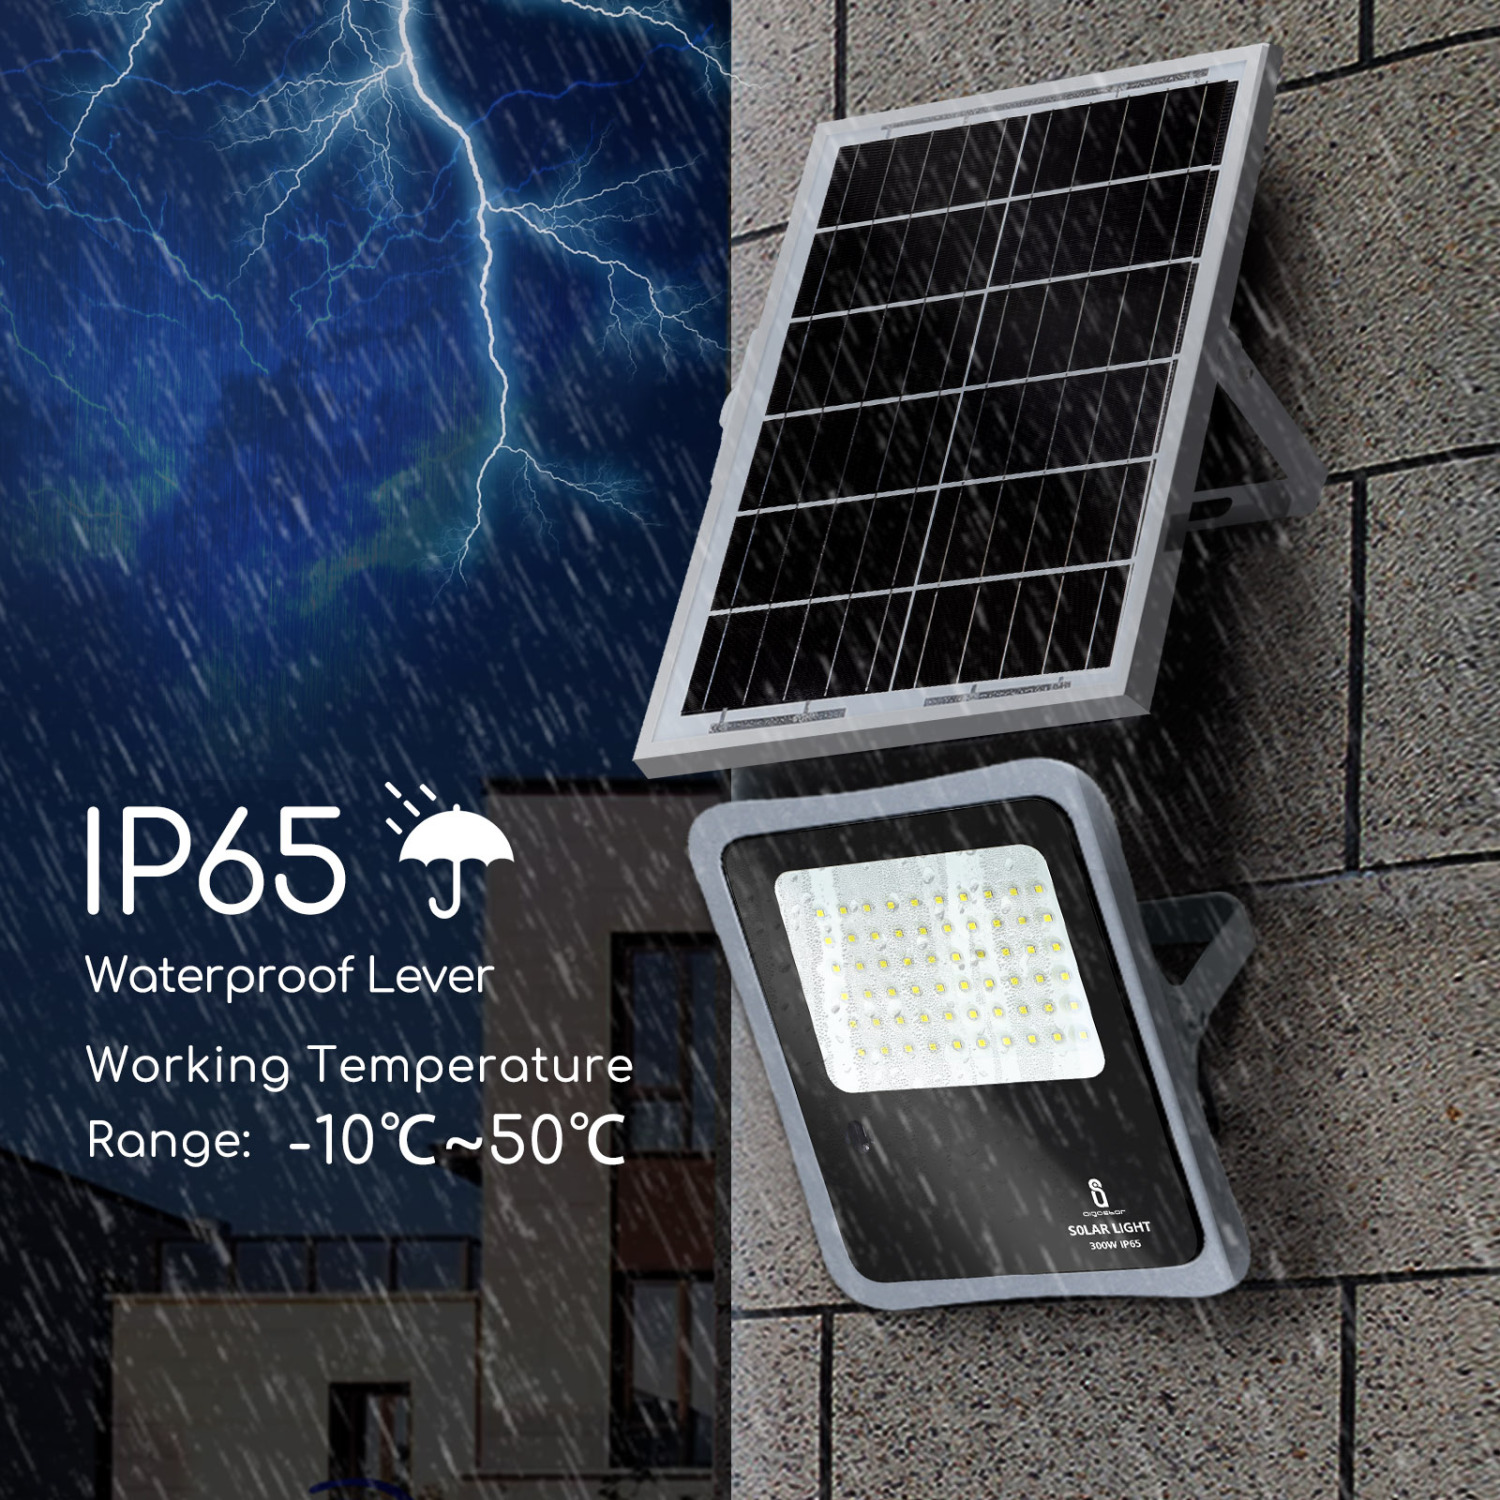 Aigostar - Faretto solare LED per esterni con telecomando da 300W, luce bianca 6500k. Faretto solare crepuscolare con funzione timer, IP65 resistenze alla pioggia